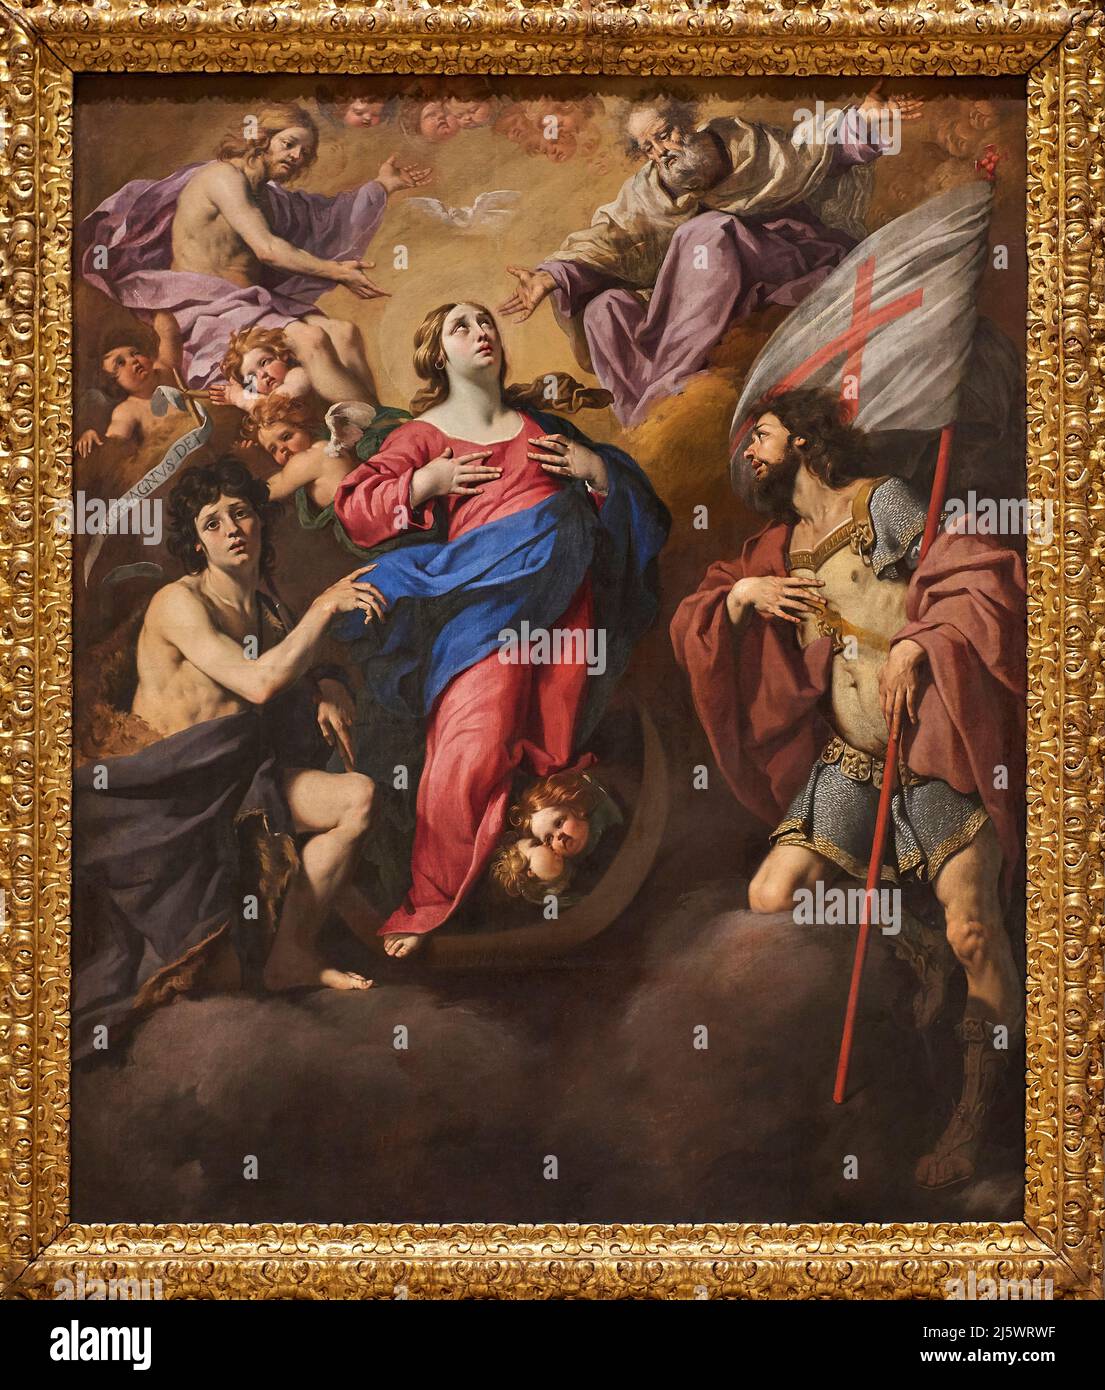 Giovanni Battista e S. Giorgio - olio su tela - Luca Ferrari - 1649 - Modena, Italia, Galleria Estense Foto Stock